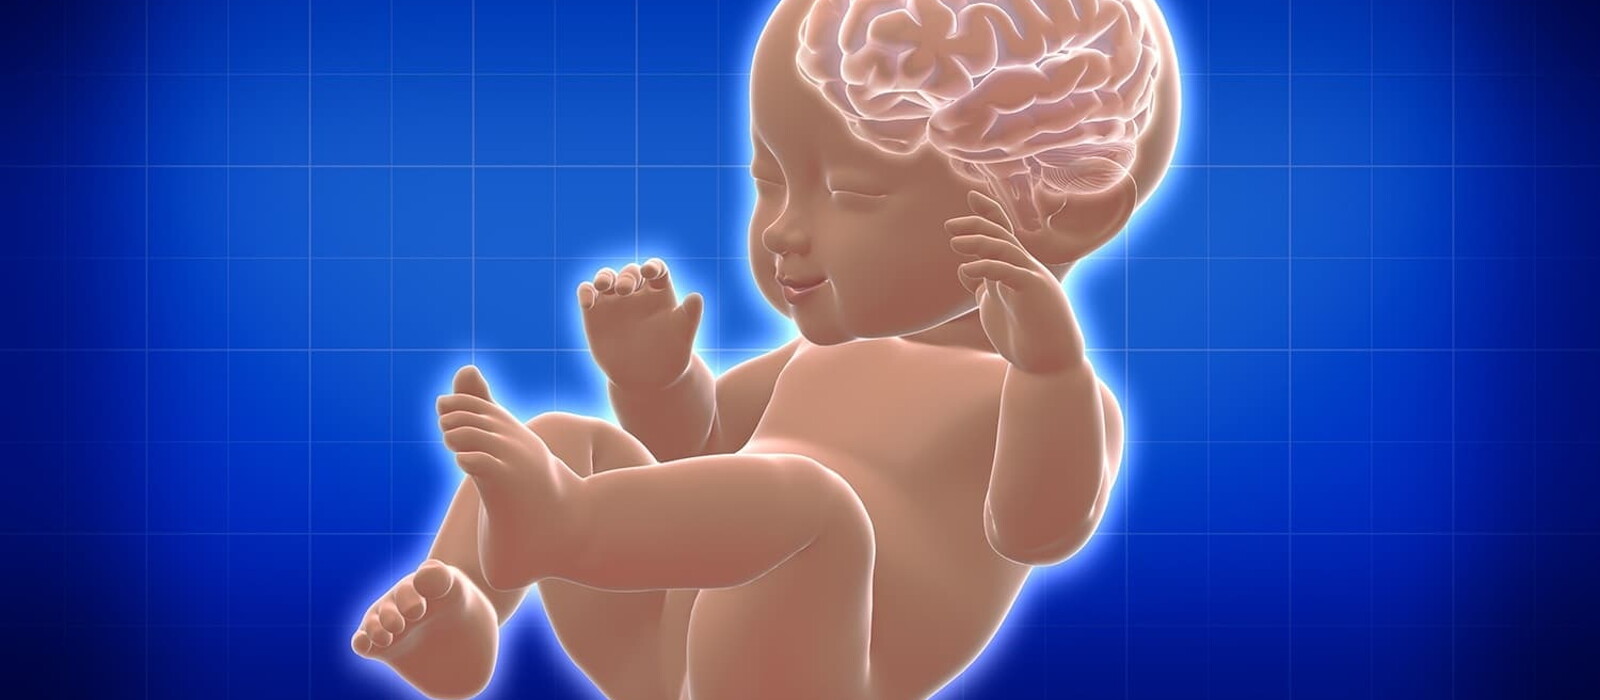 วิธีเลี้ยงลูกให้ฉลาด สมองไว ตั้งแต่แรกเกิด ถึง 6 ปี